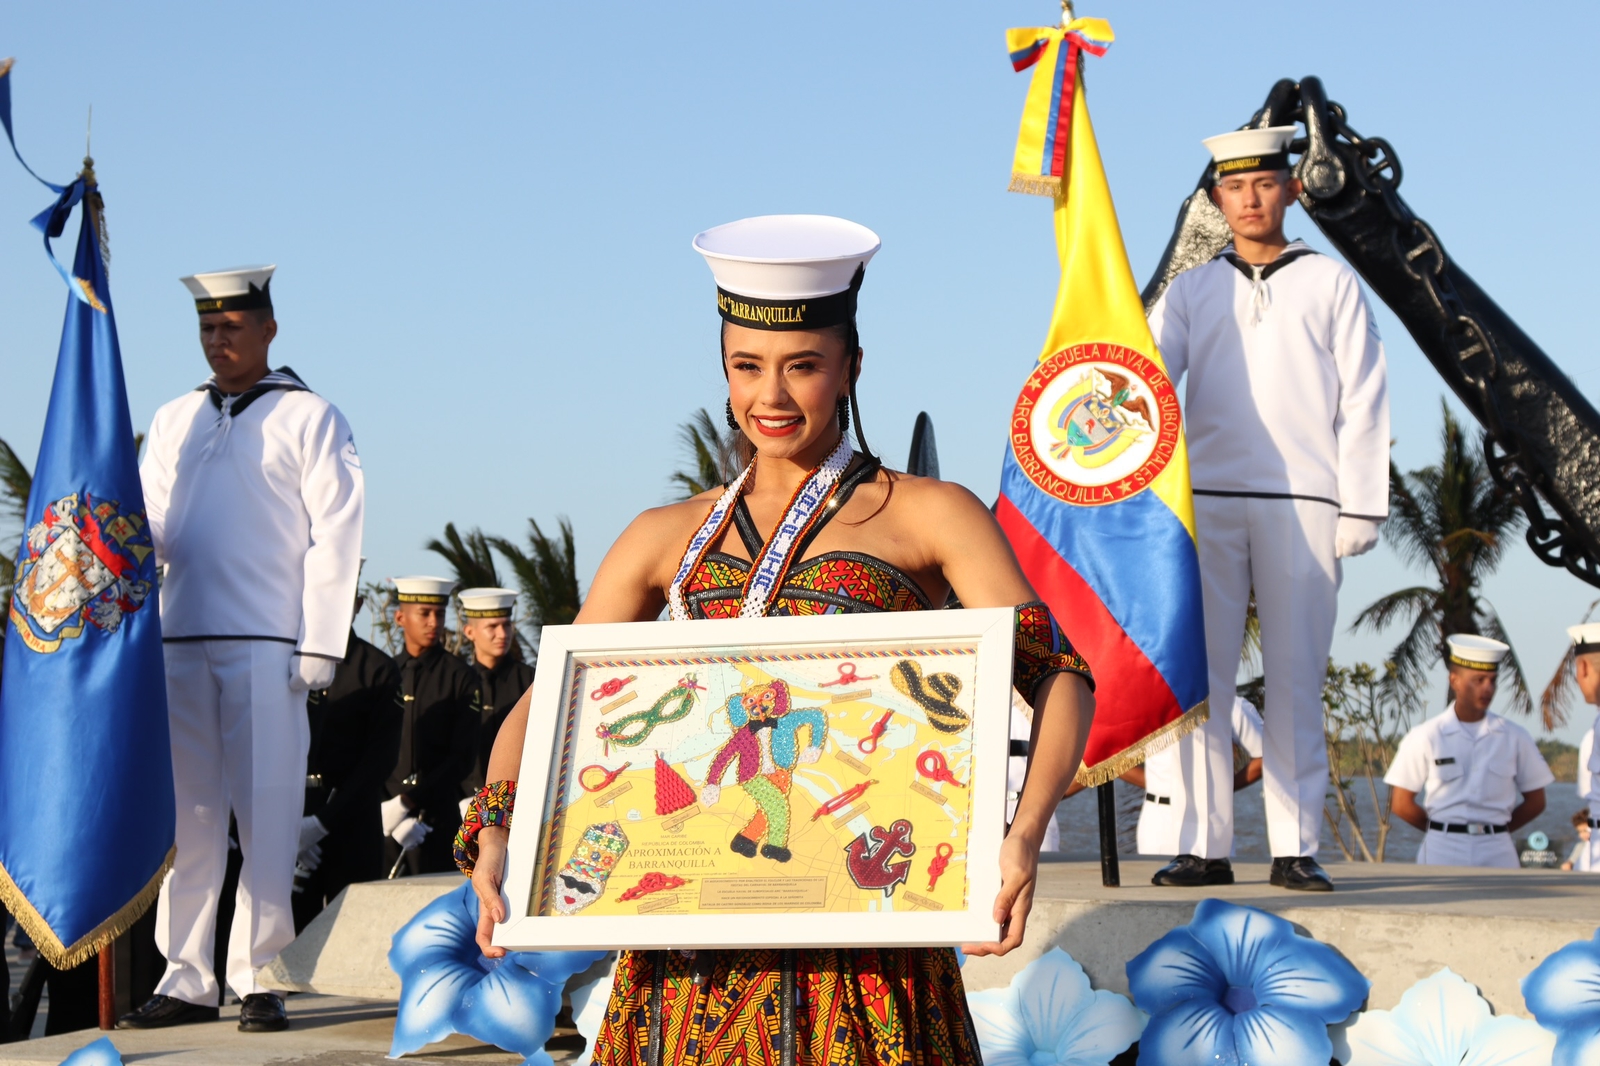 Natalia De Castro recibió la gorra, rabiza y cuadro marinero.